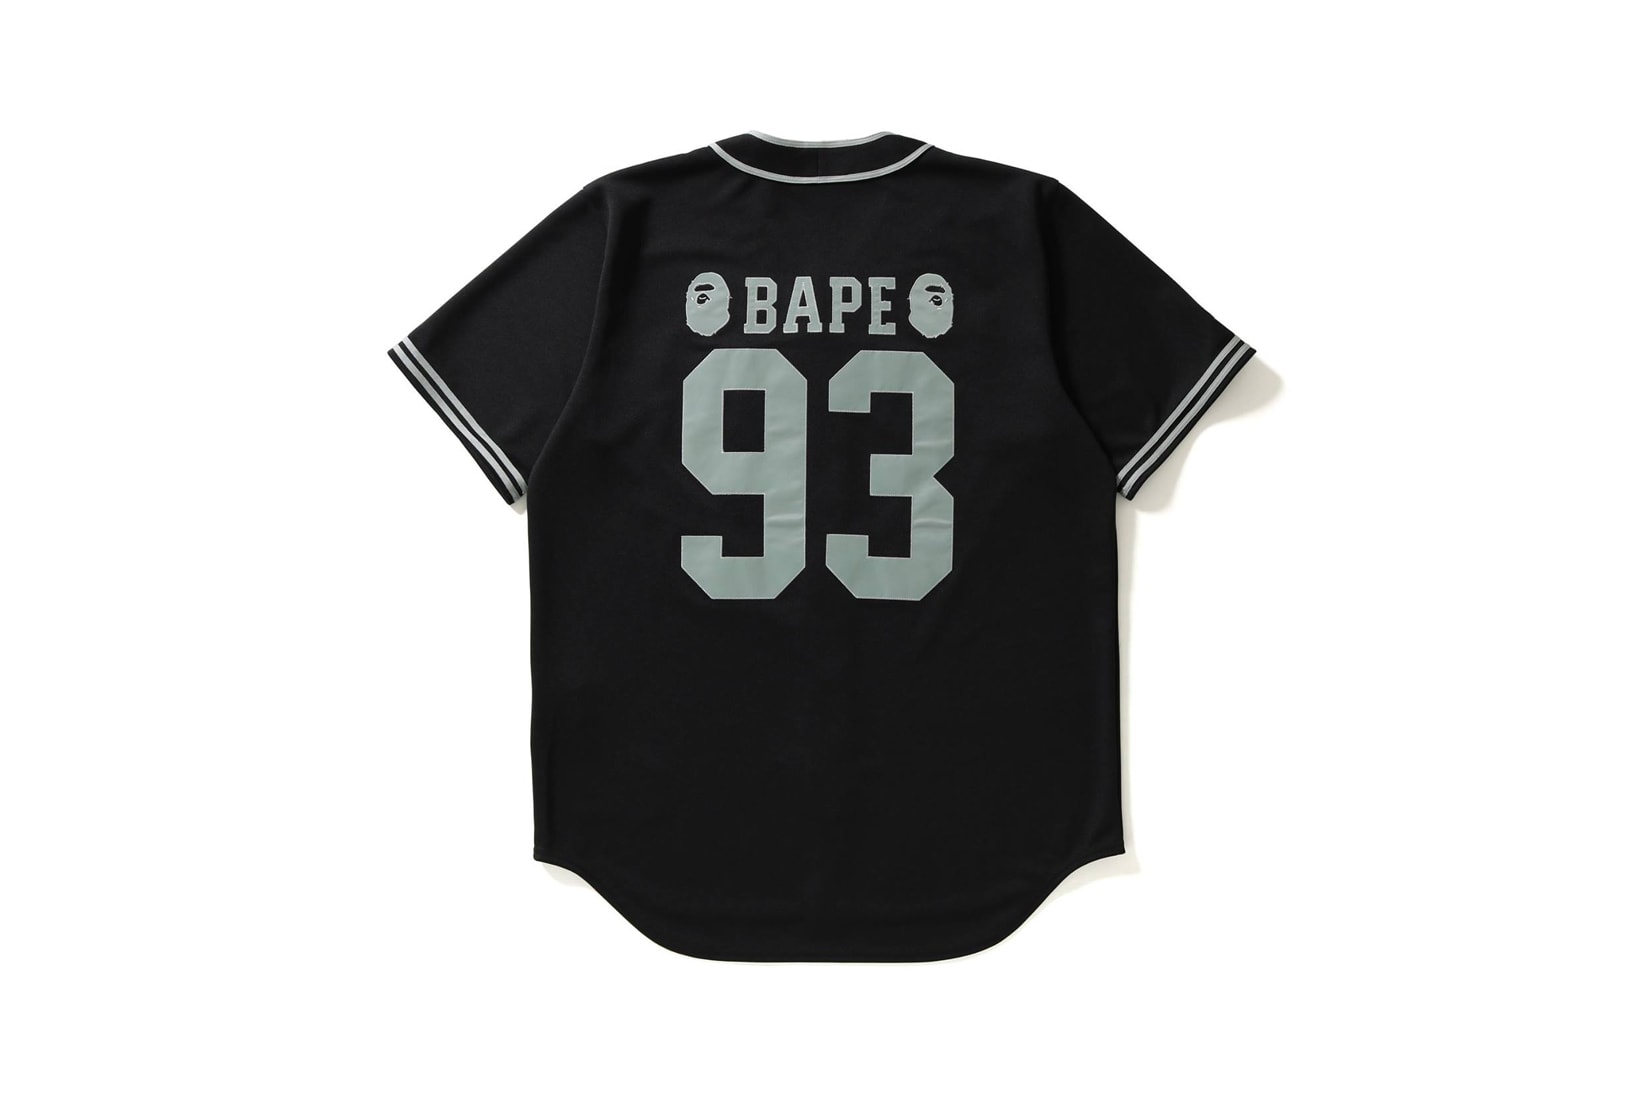 BAPE A Bathing Ape Majestic Sportswear Clothing Apparel Jackets T Shirts Sportswear Release Info Drops Date January 13 2018